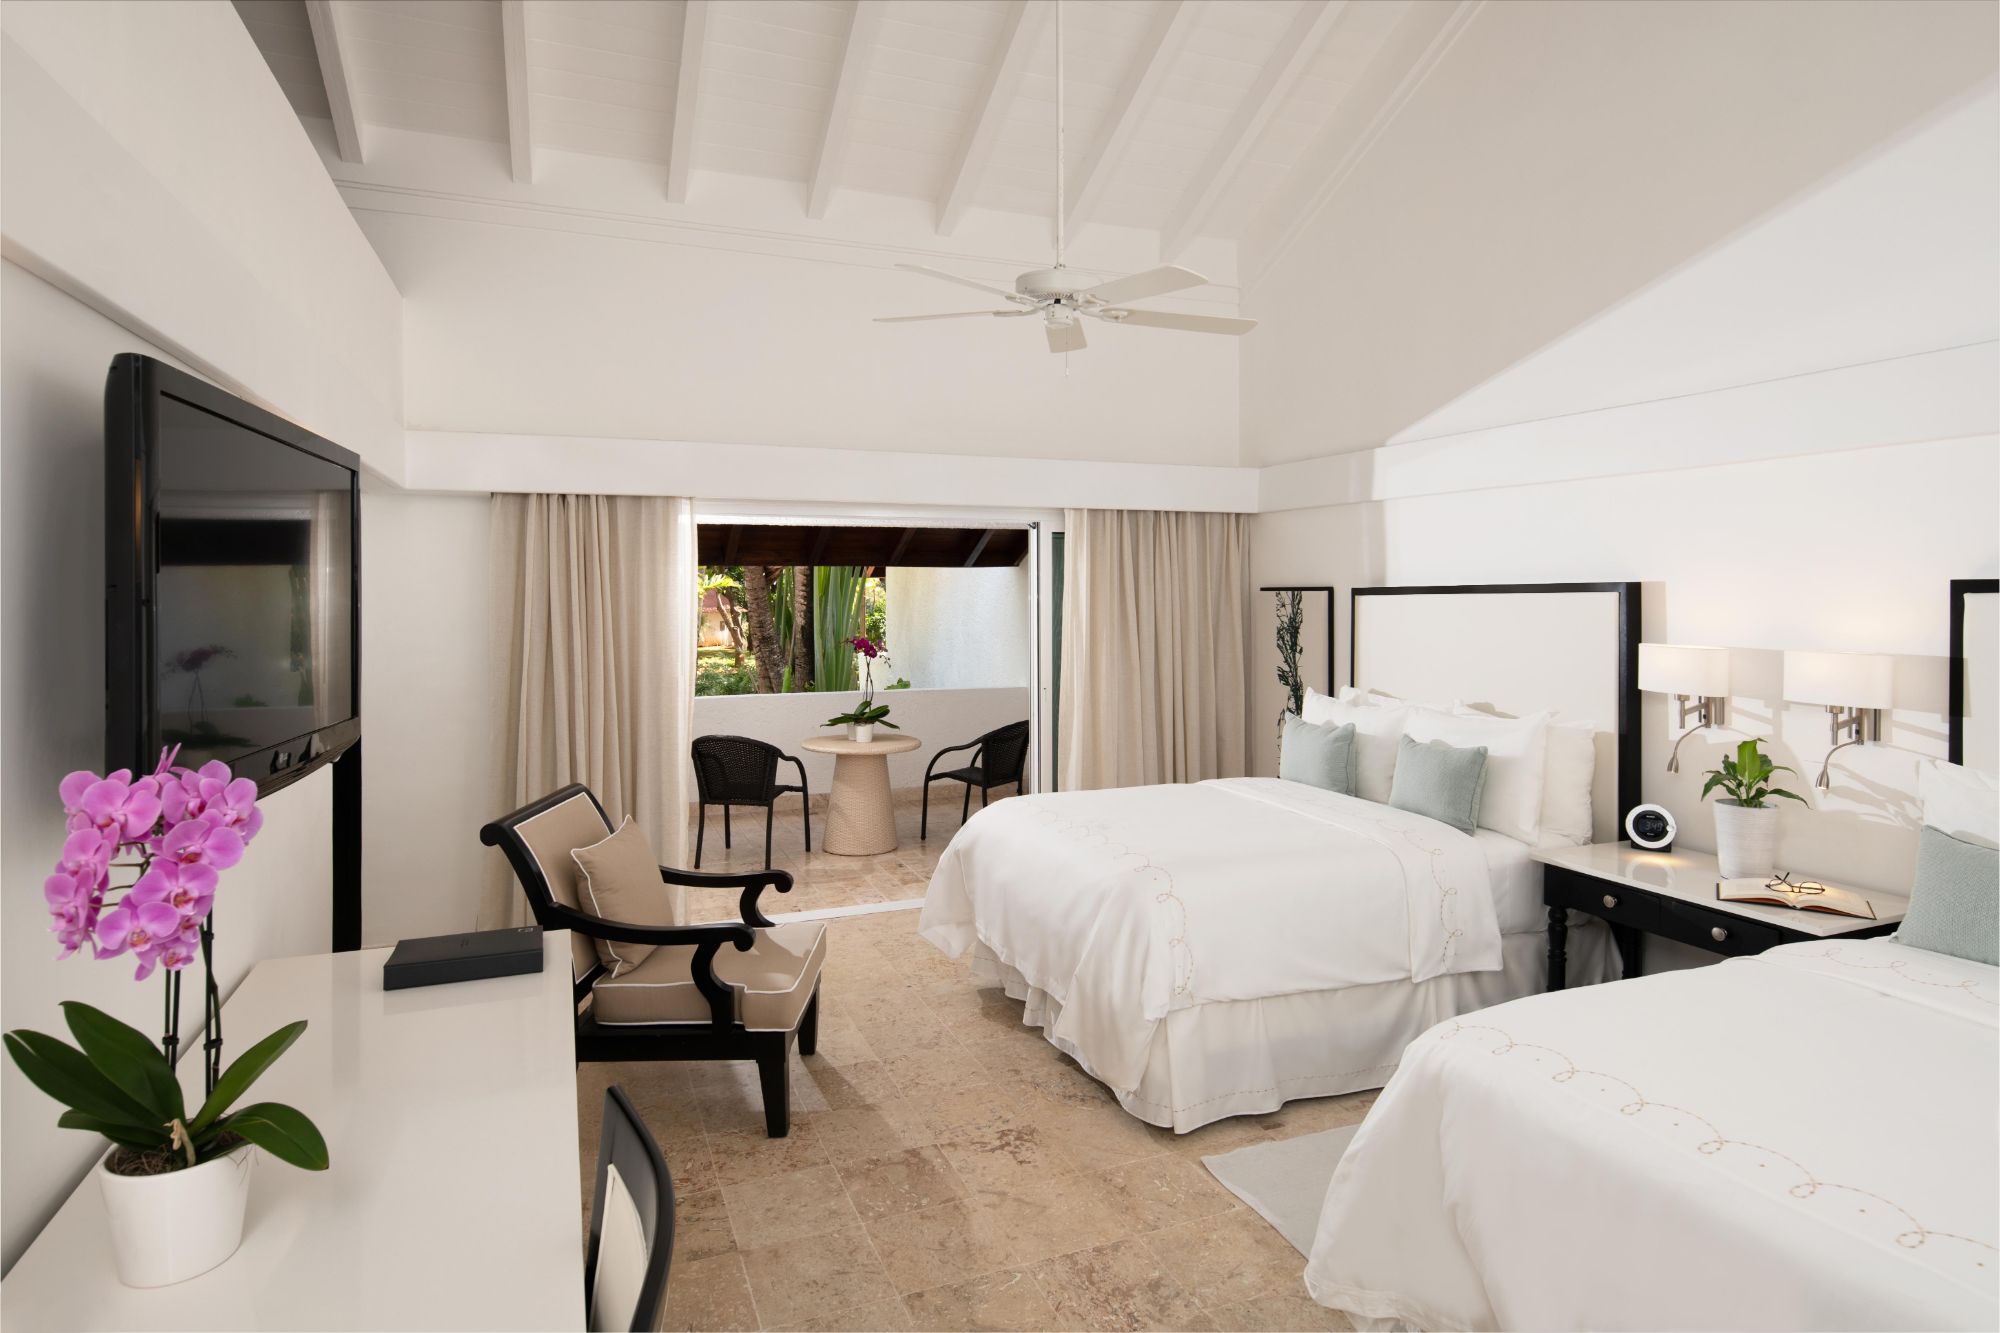 Superior Casita Resort Hotel Room With Double Beds at Casa de Campo Resort & Villas in the Dominican Republic.